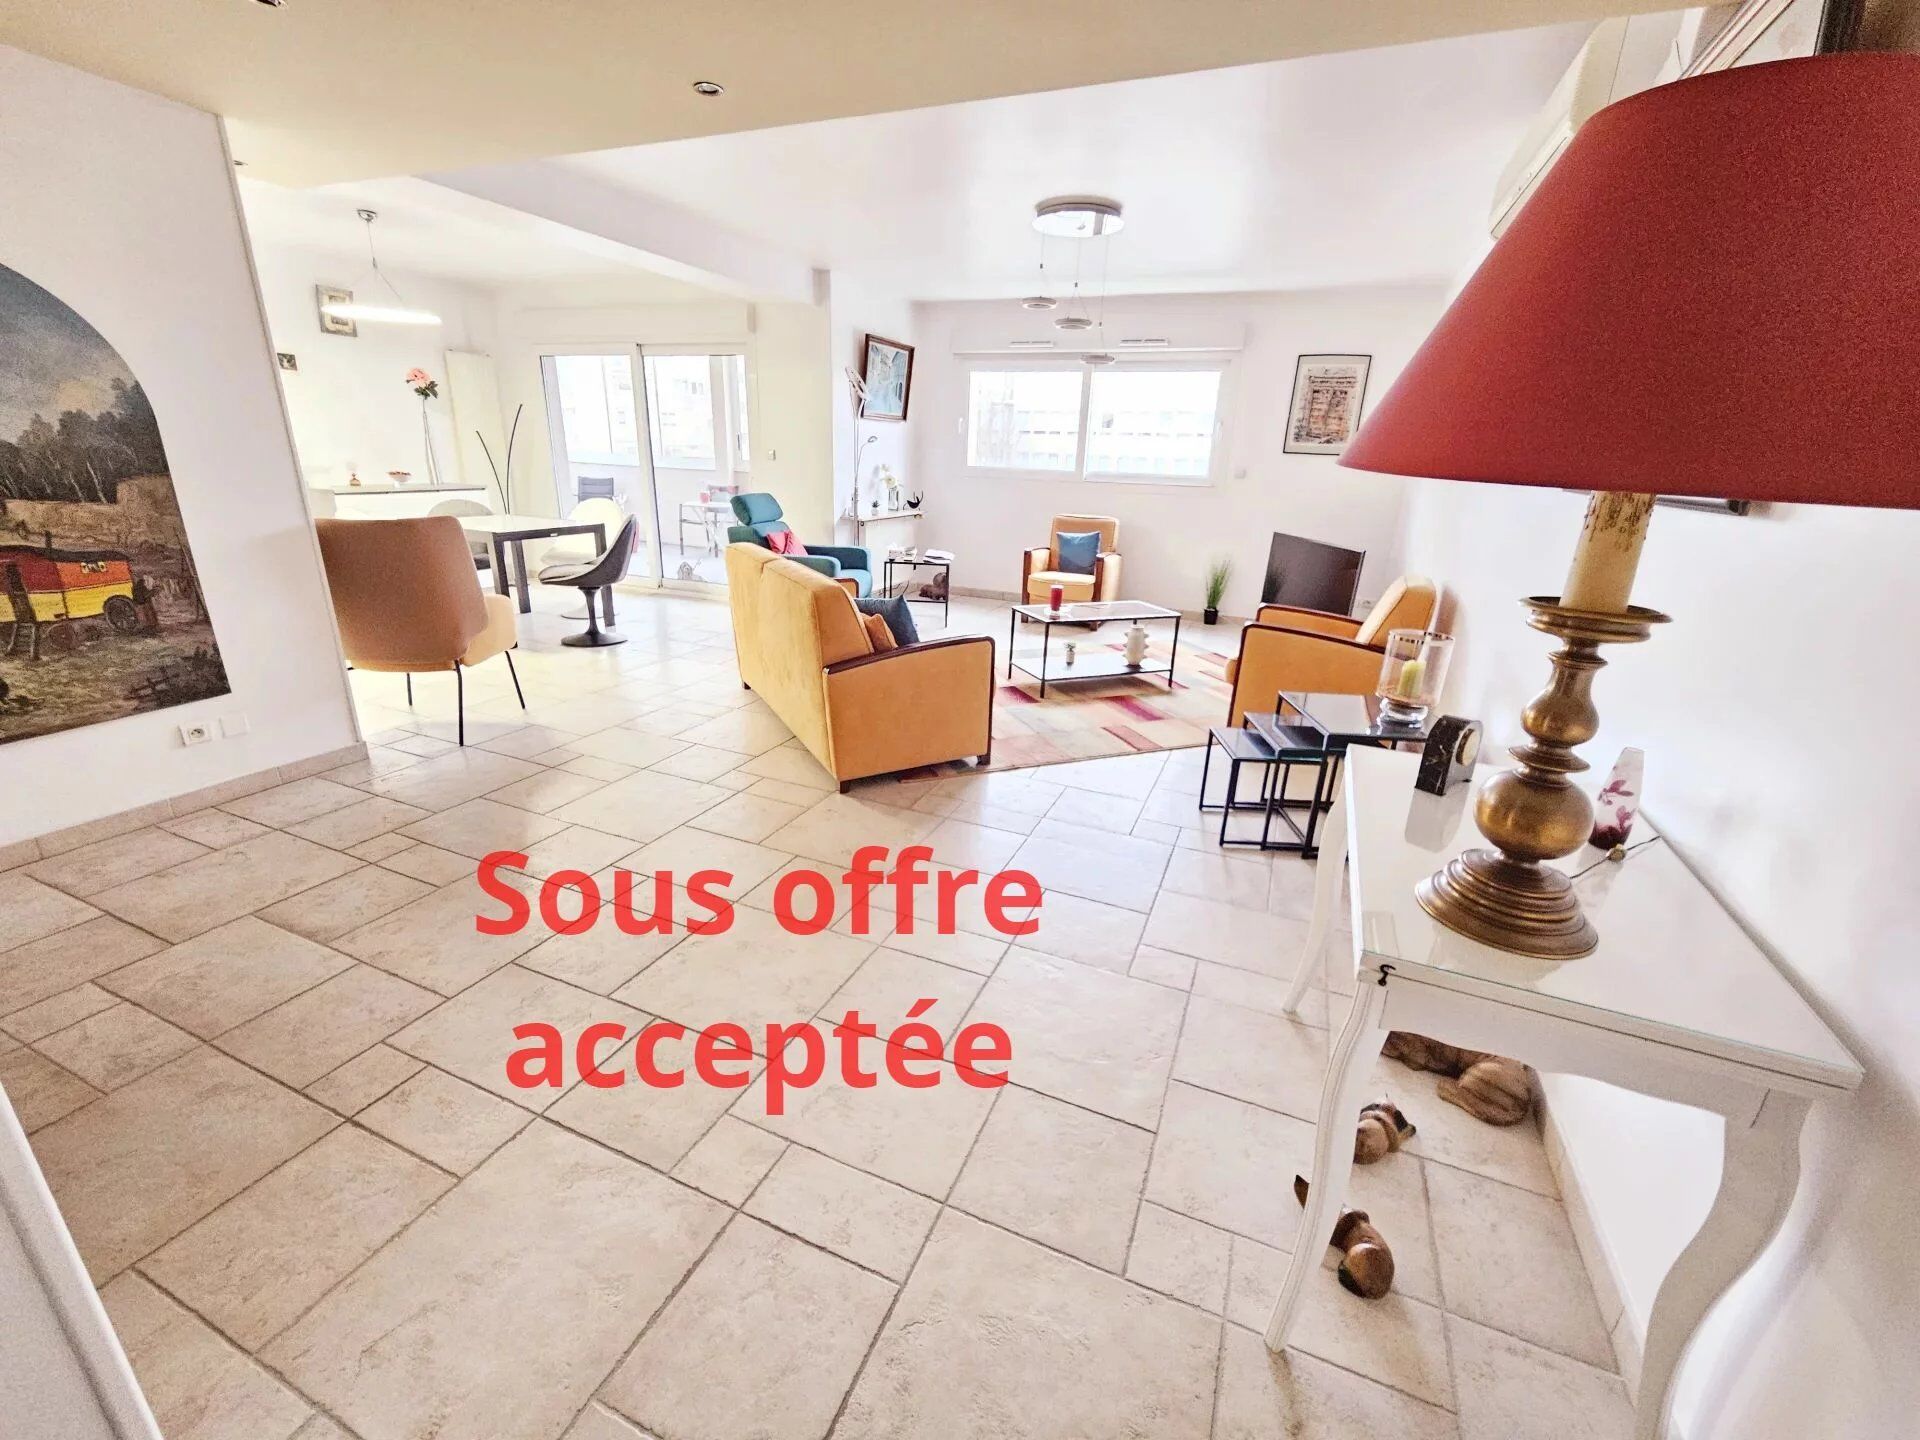 vente immobilière agentmandataire.fr Bourg-en-Bresse